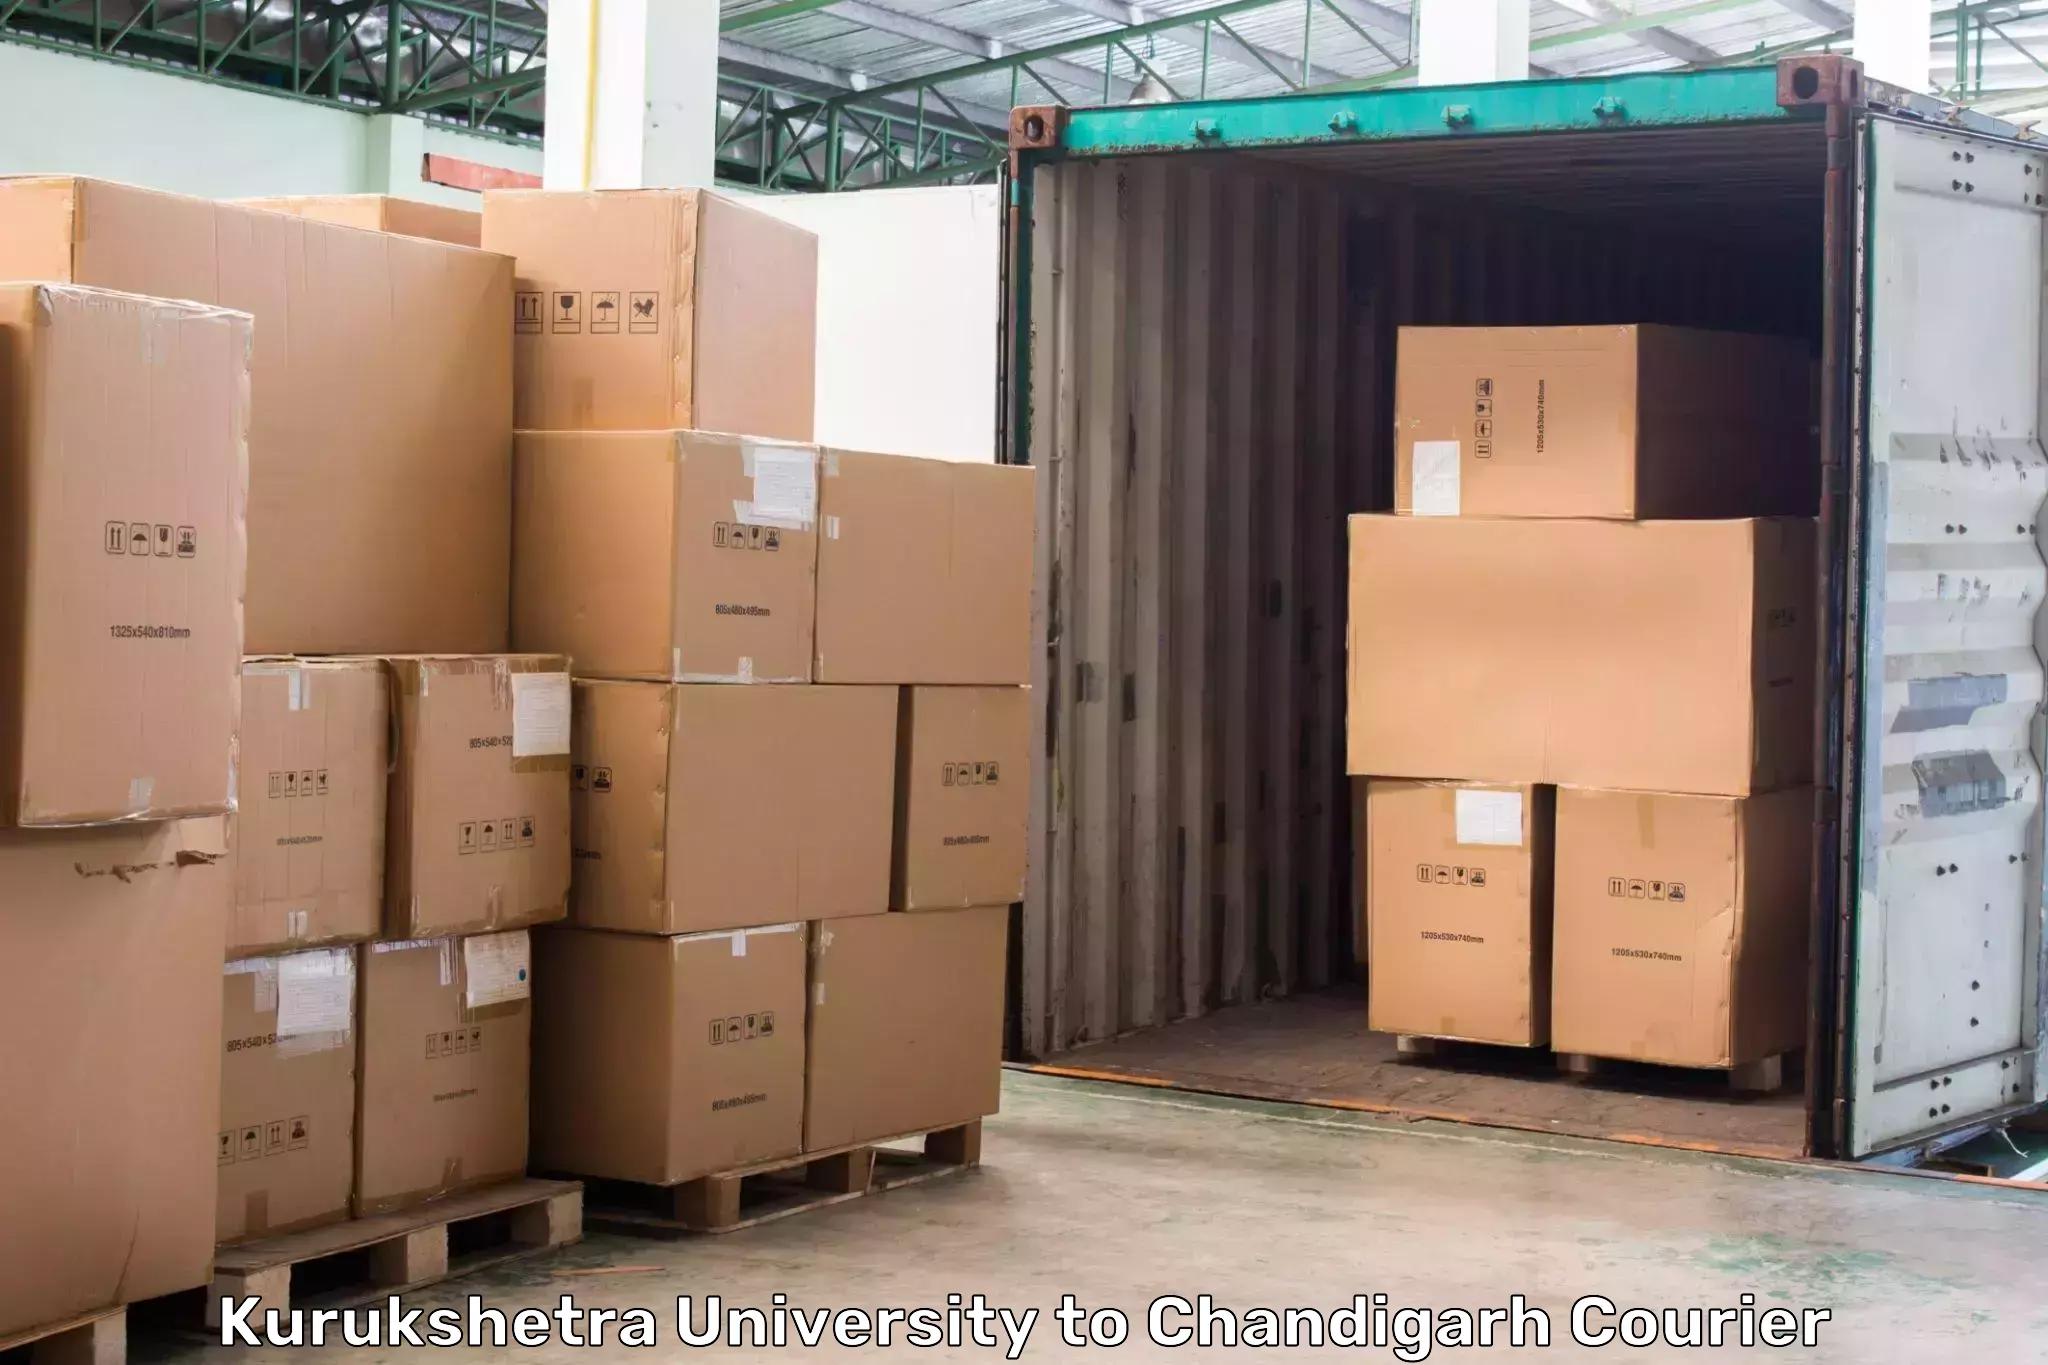 Same day shipping in Kurukshetra University to Chandigarh